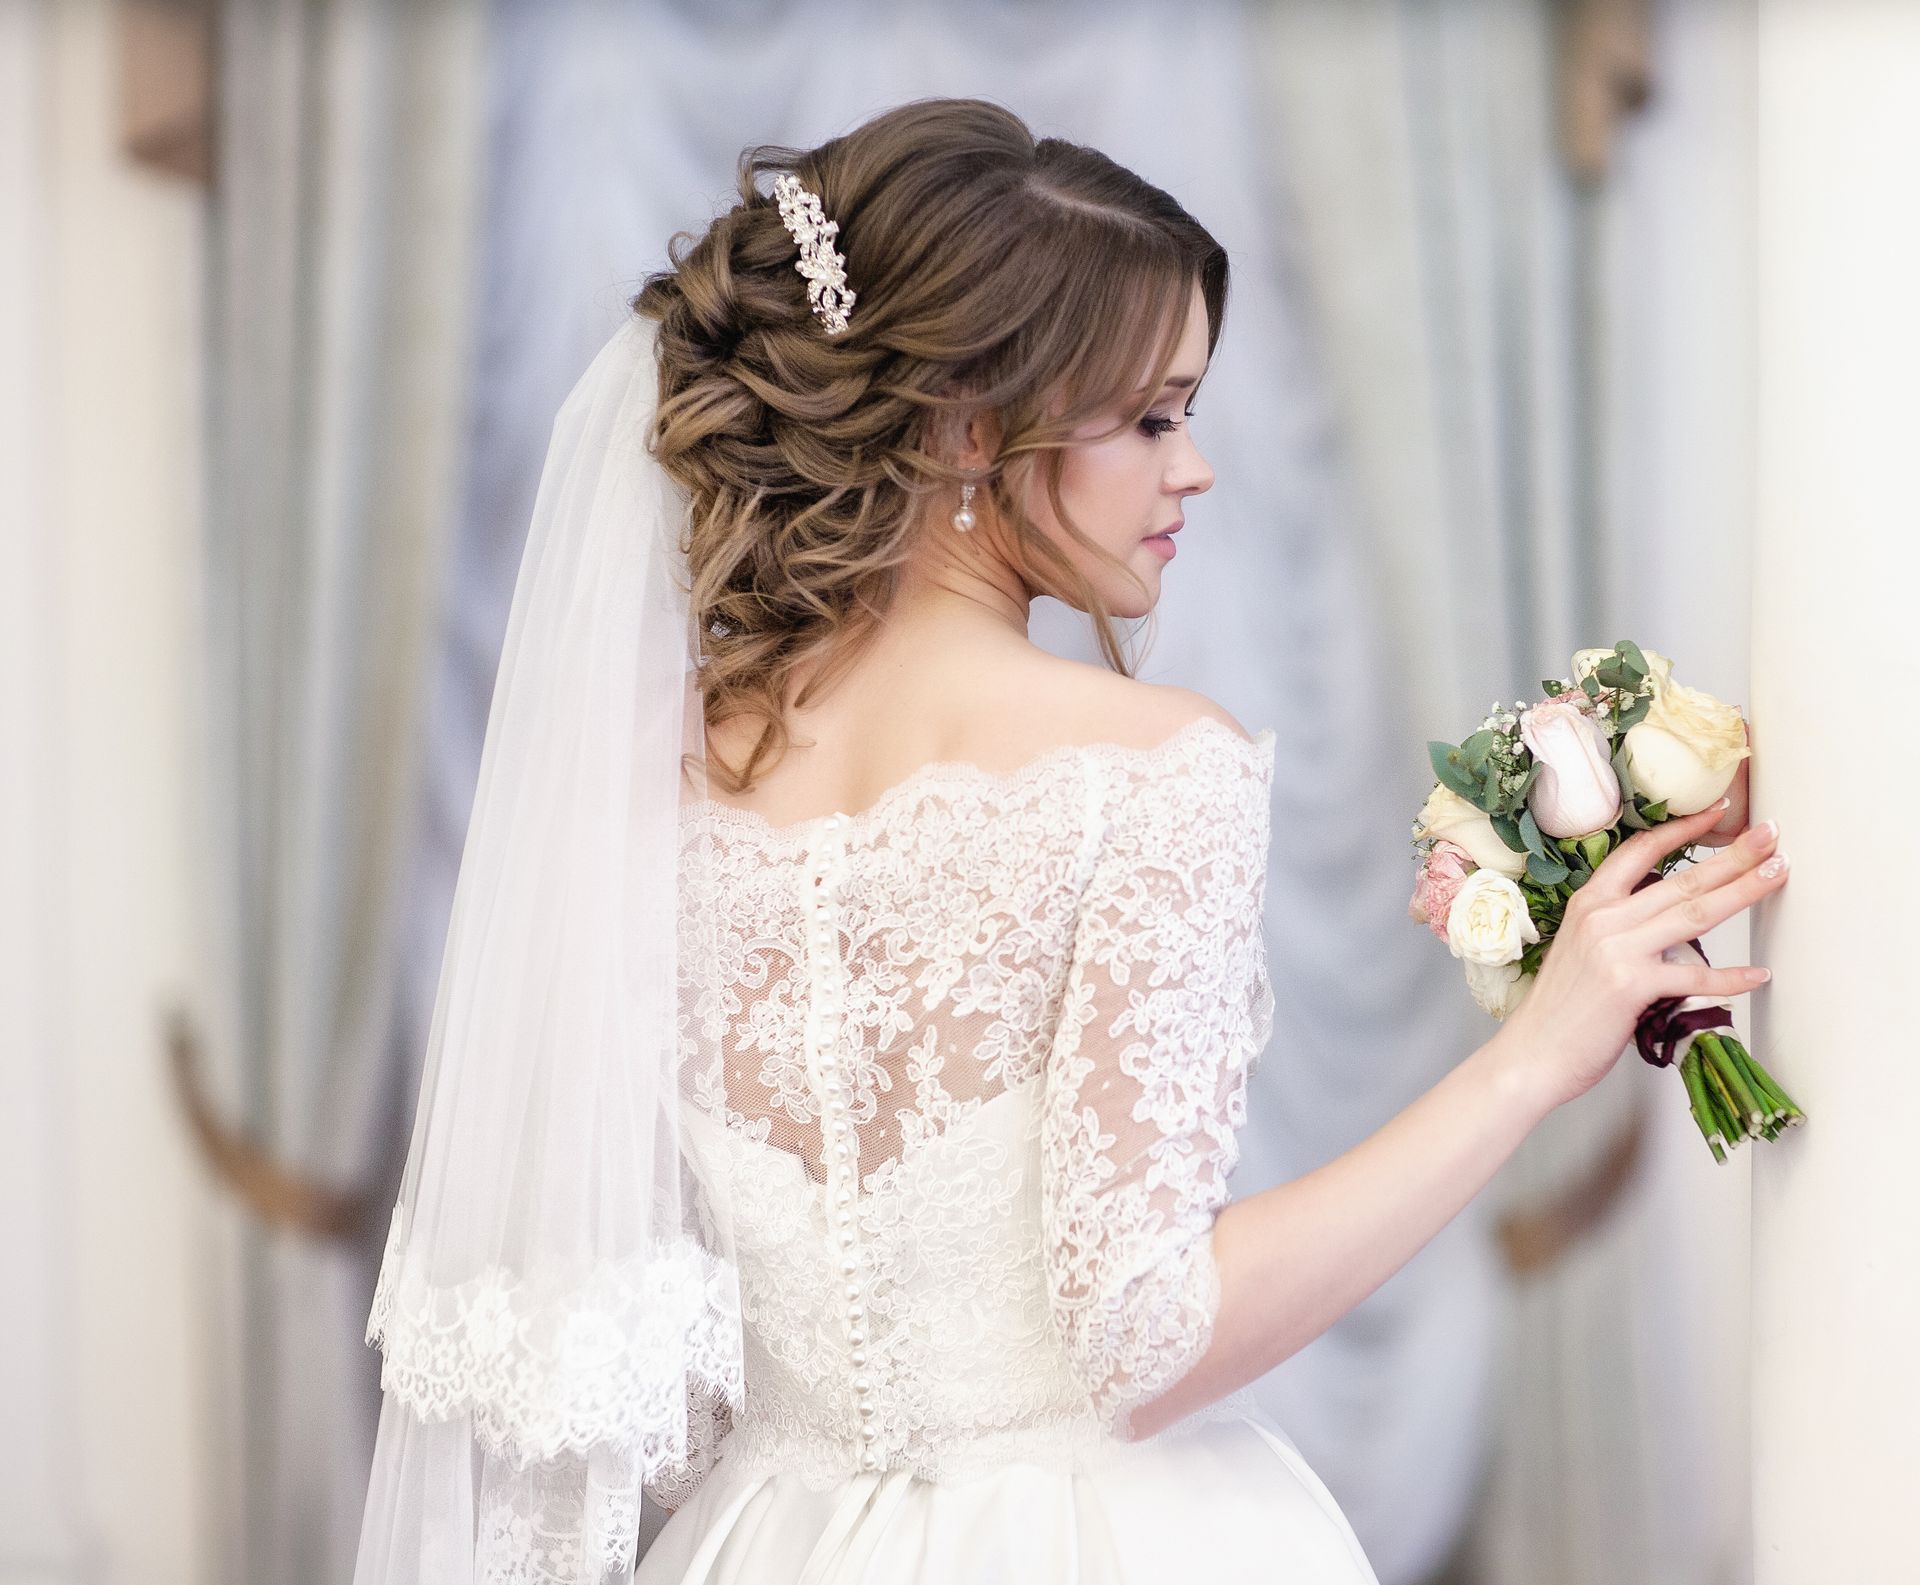 A Bride in A White Lace Dress | Lakes Entrance, VIC | Salon Classique